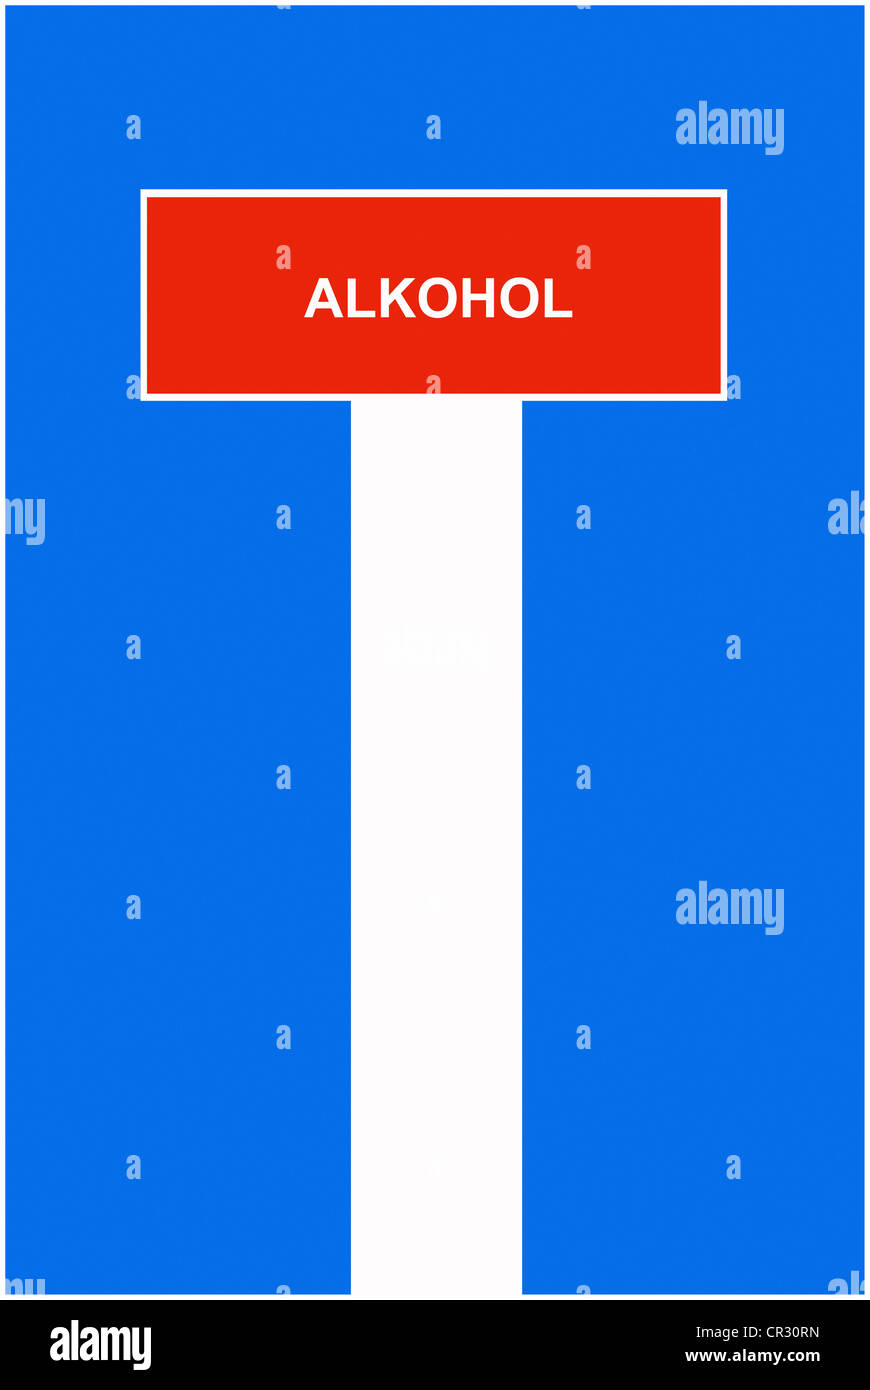 Symbolische Bild, Dead-End street, Sackgasse, Alkohol, Deutsch für "Alkohol" Stockfoto